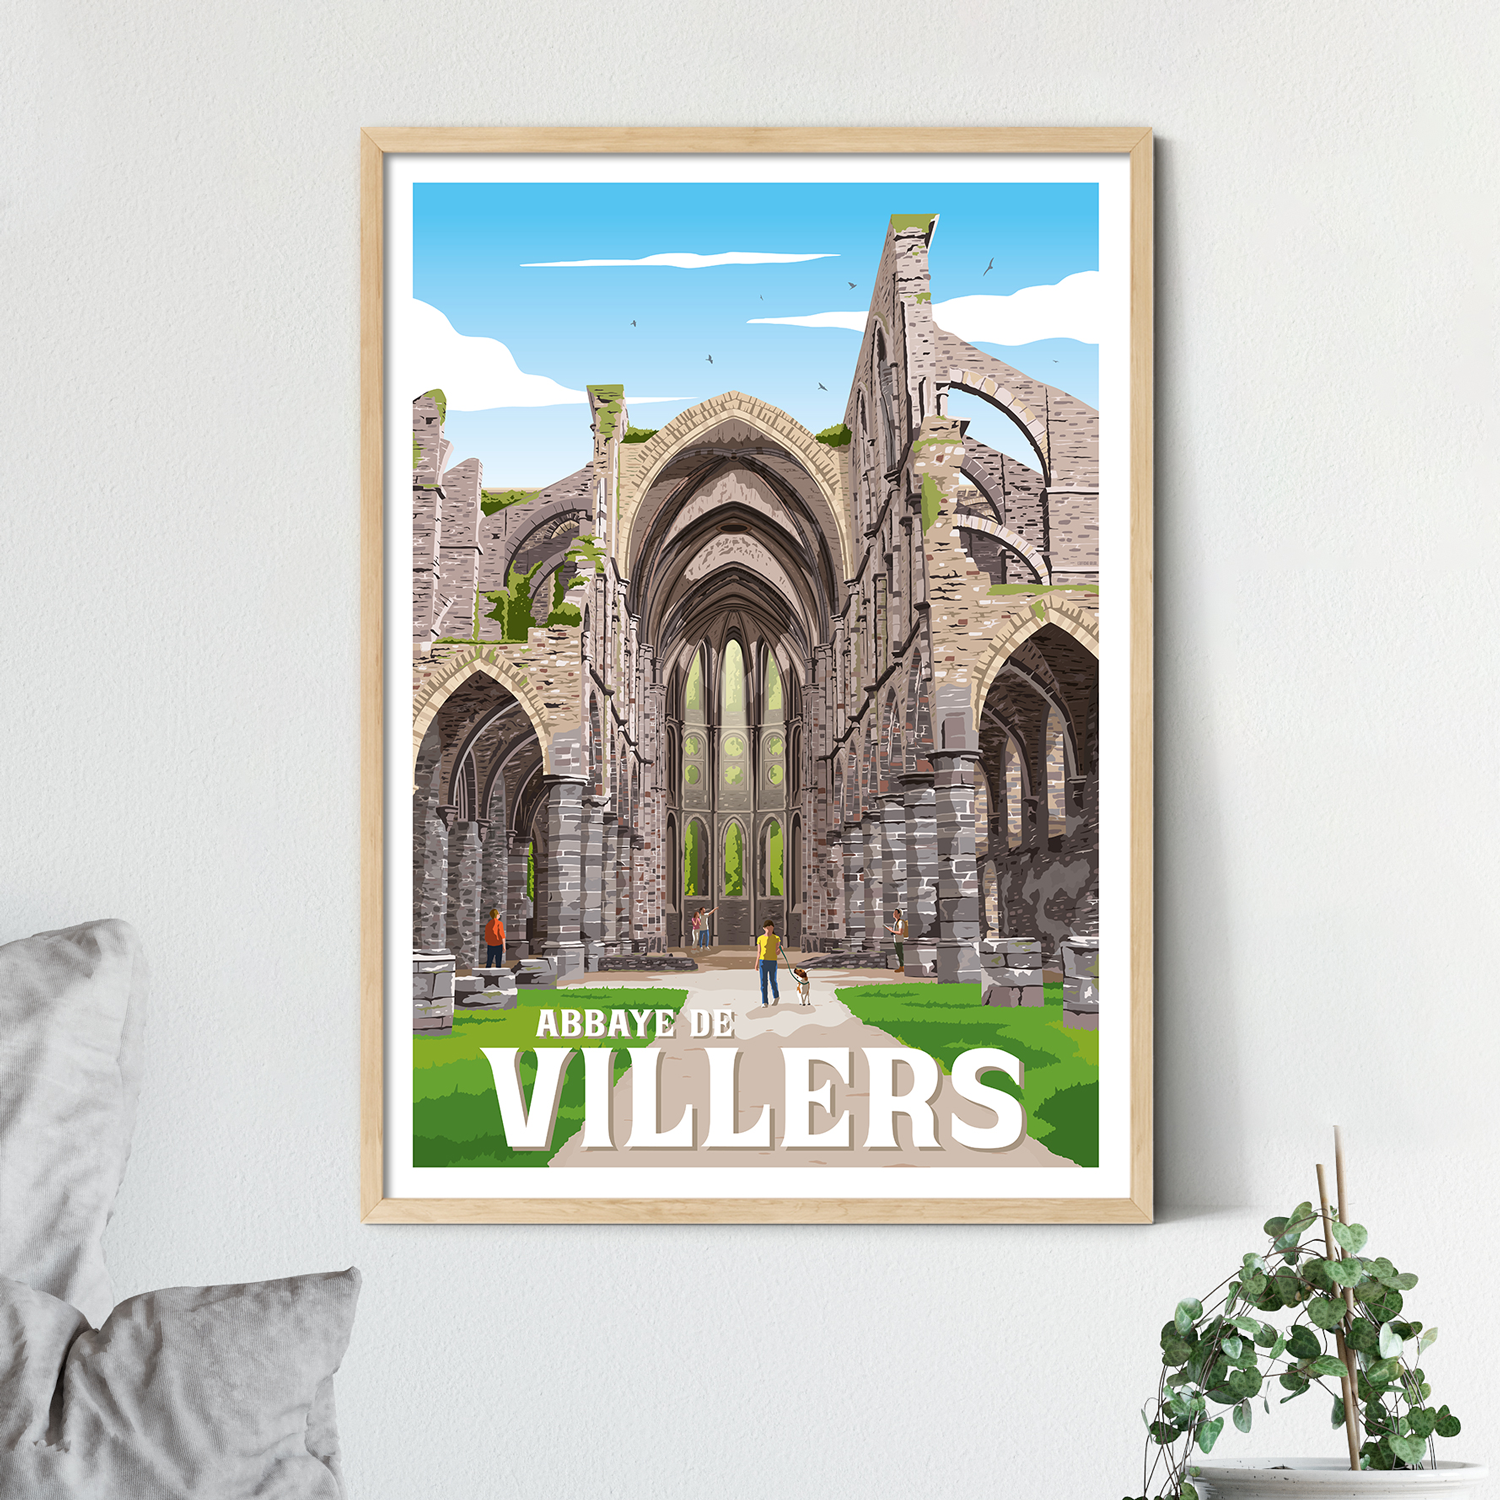 Affiche “Abbaye de Villers”